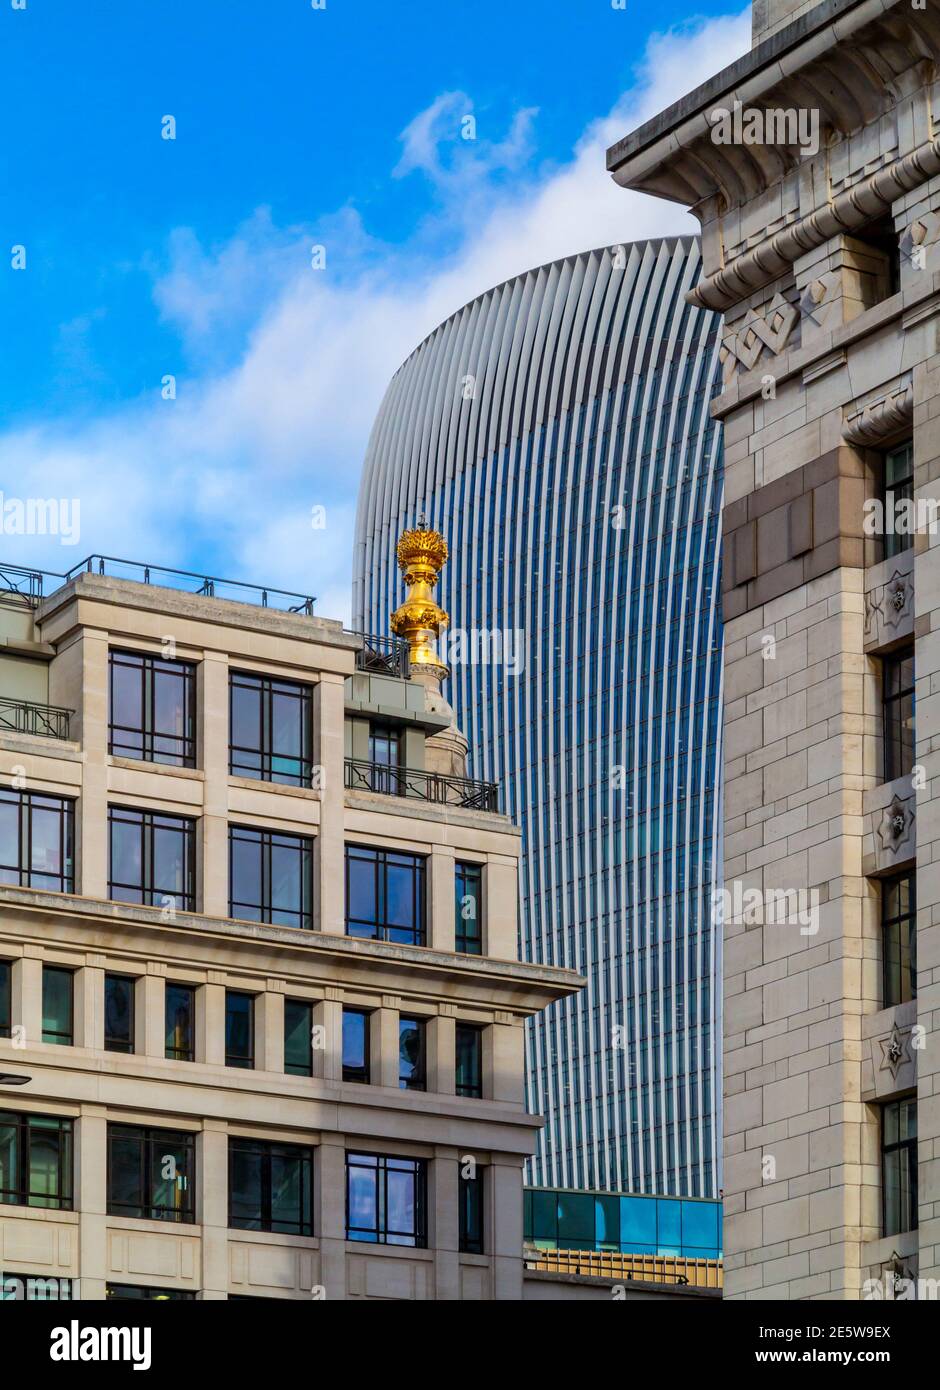 Vue sur 20 Fenchurch Street ou le bureau Walkie Talkie conçu par Rafael Vinoly dans la ville de Londres Angleterre Royaume-Uni avec d'autres bureaux à proximité. Banque D'Images